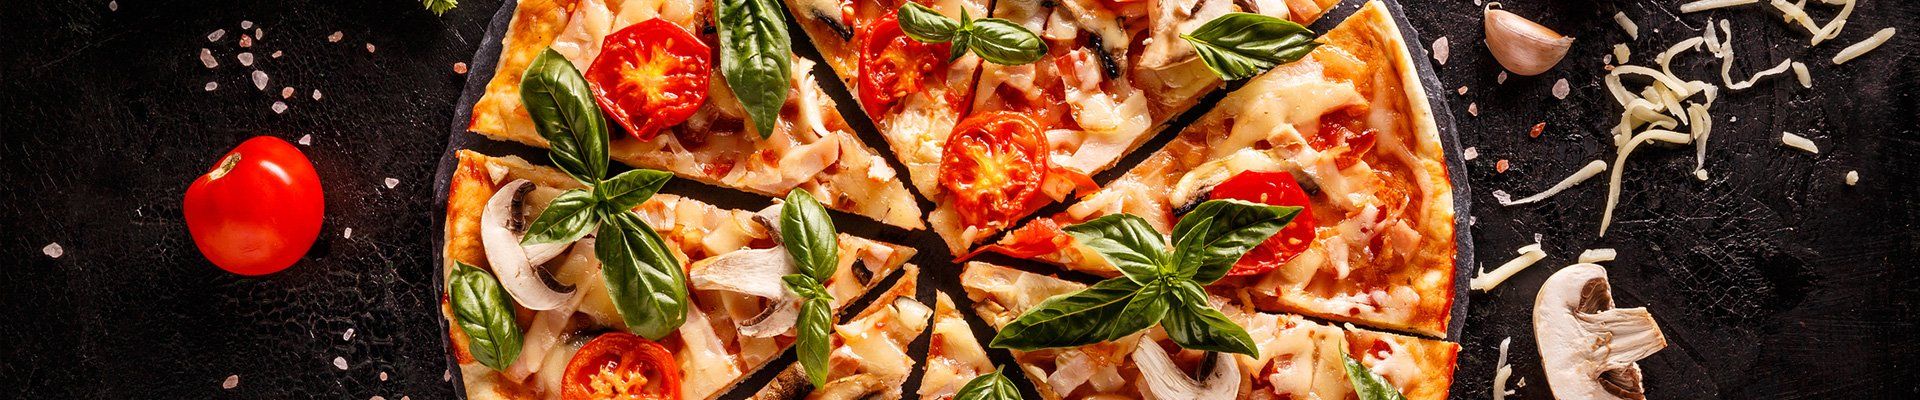 Best Pizza In California — Delicious Sliced Italian Pizza in Pleasanton, CA